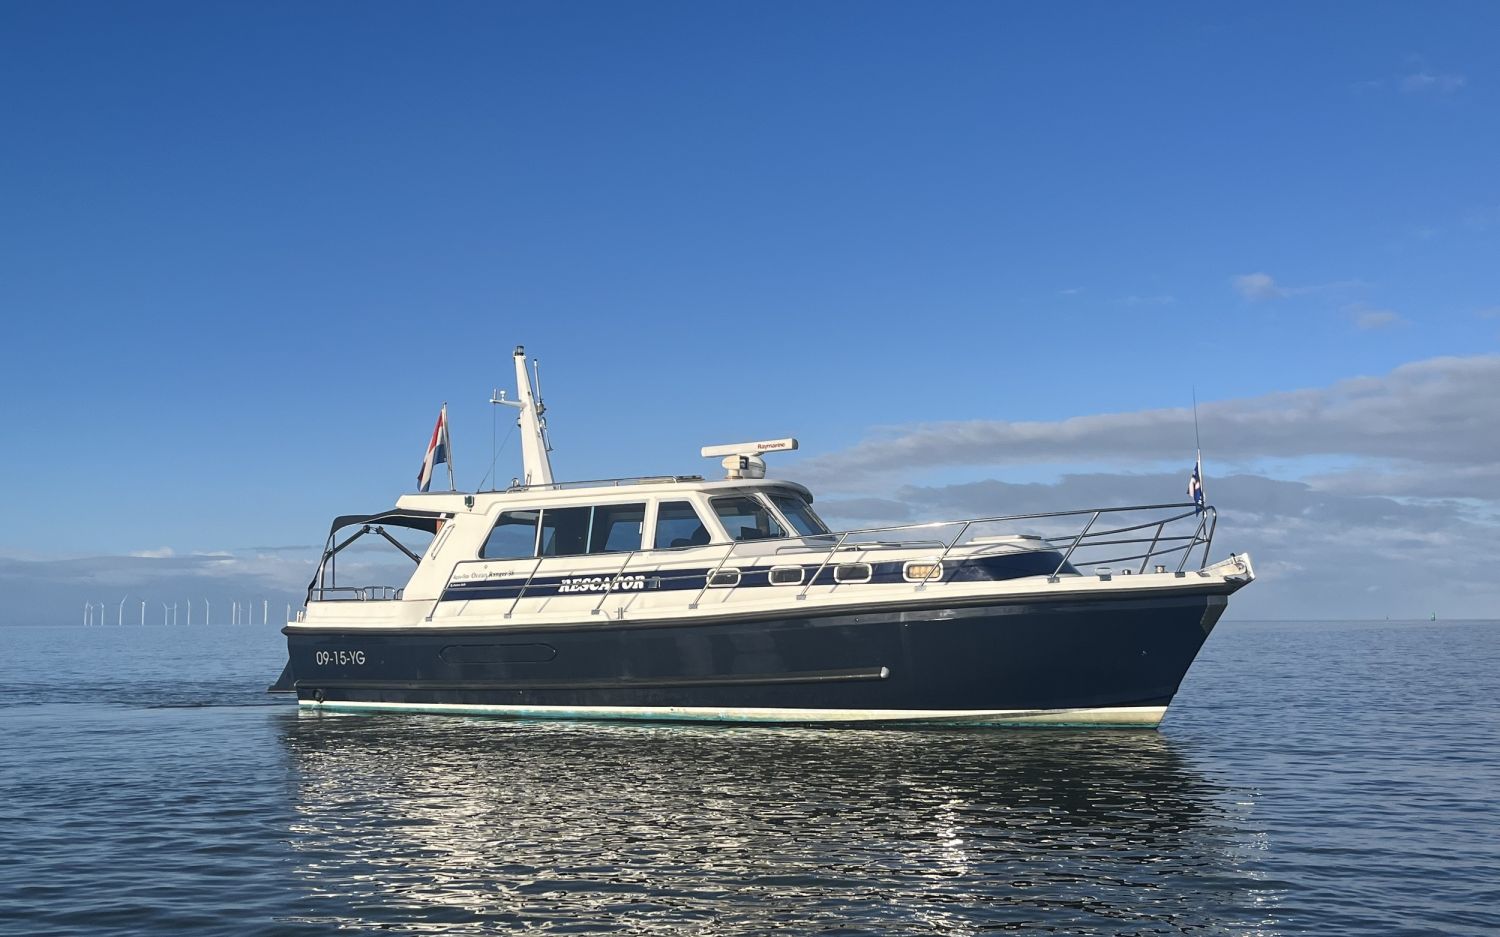 Aquastar Oceanranger 38, Motorjacht for sale by HollandBoat International Yachtbrokers